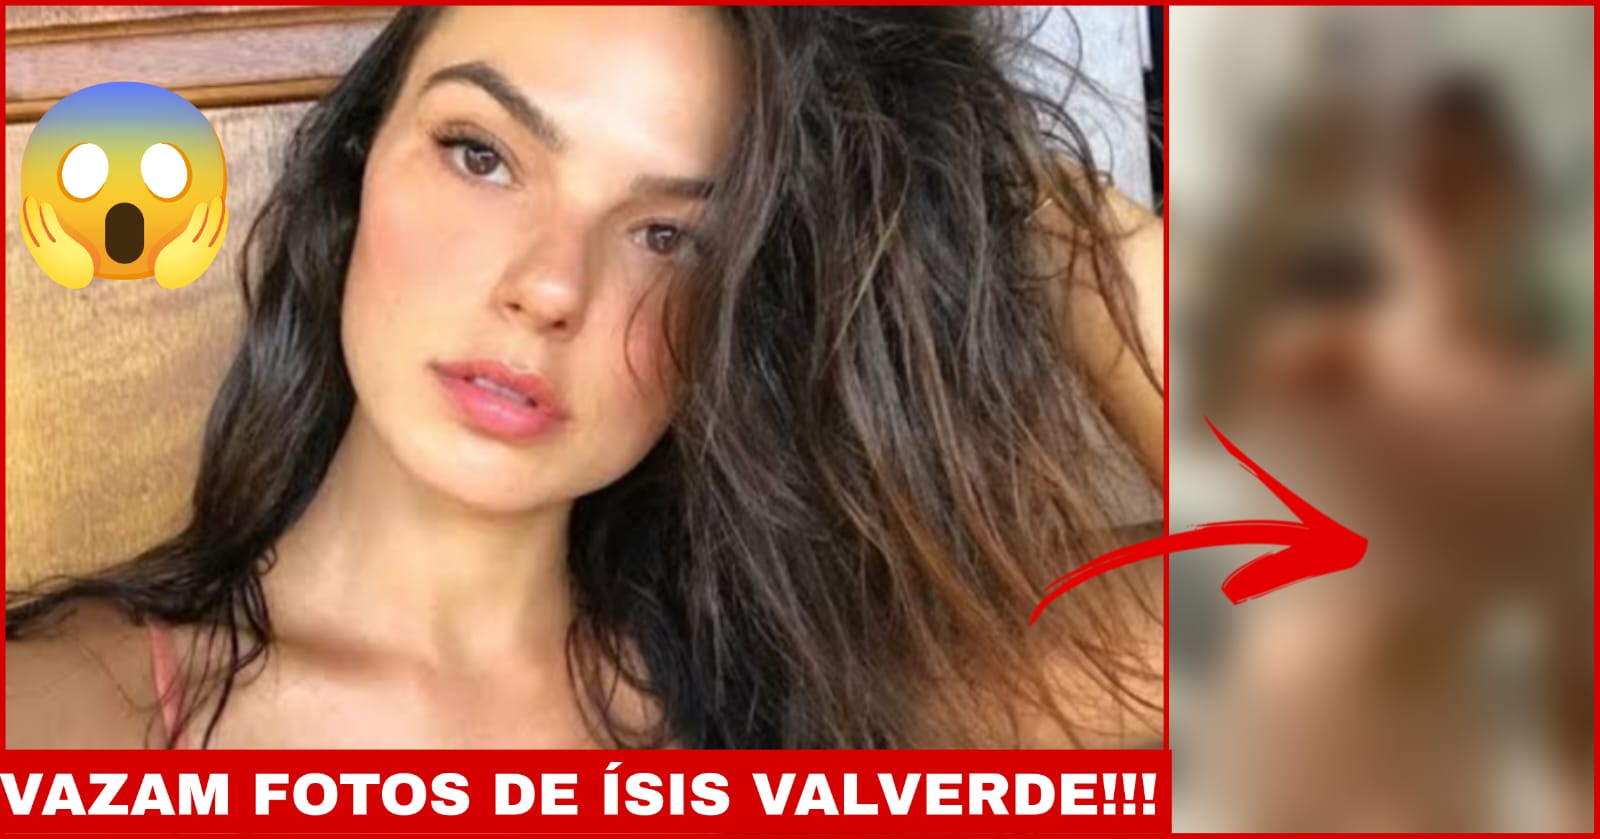 O caso envolvendo a atriz Isis Valverde é um exemplo alarmante da violação de privacidade que muitas pessoas enfrentam na era digital. FOTO: internet